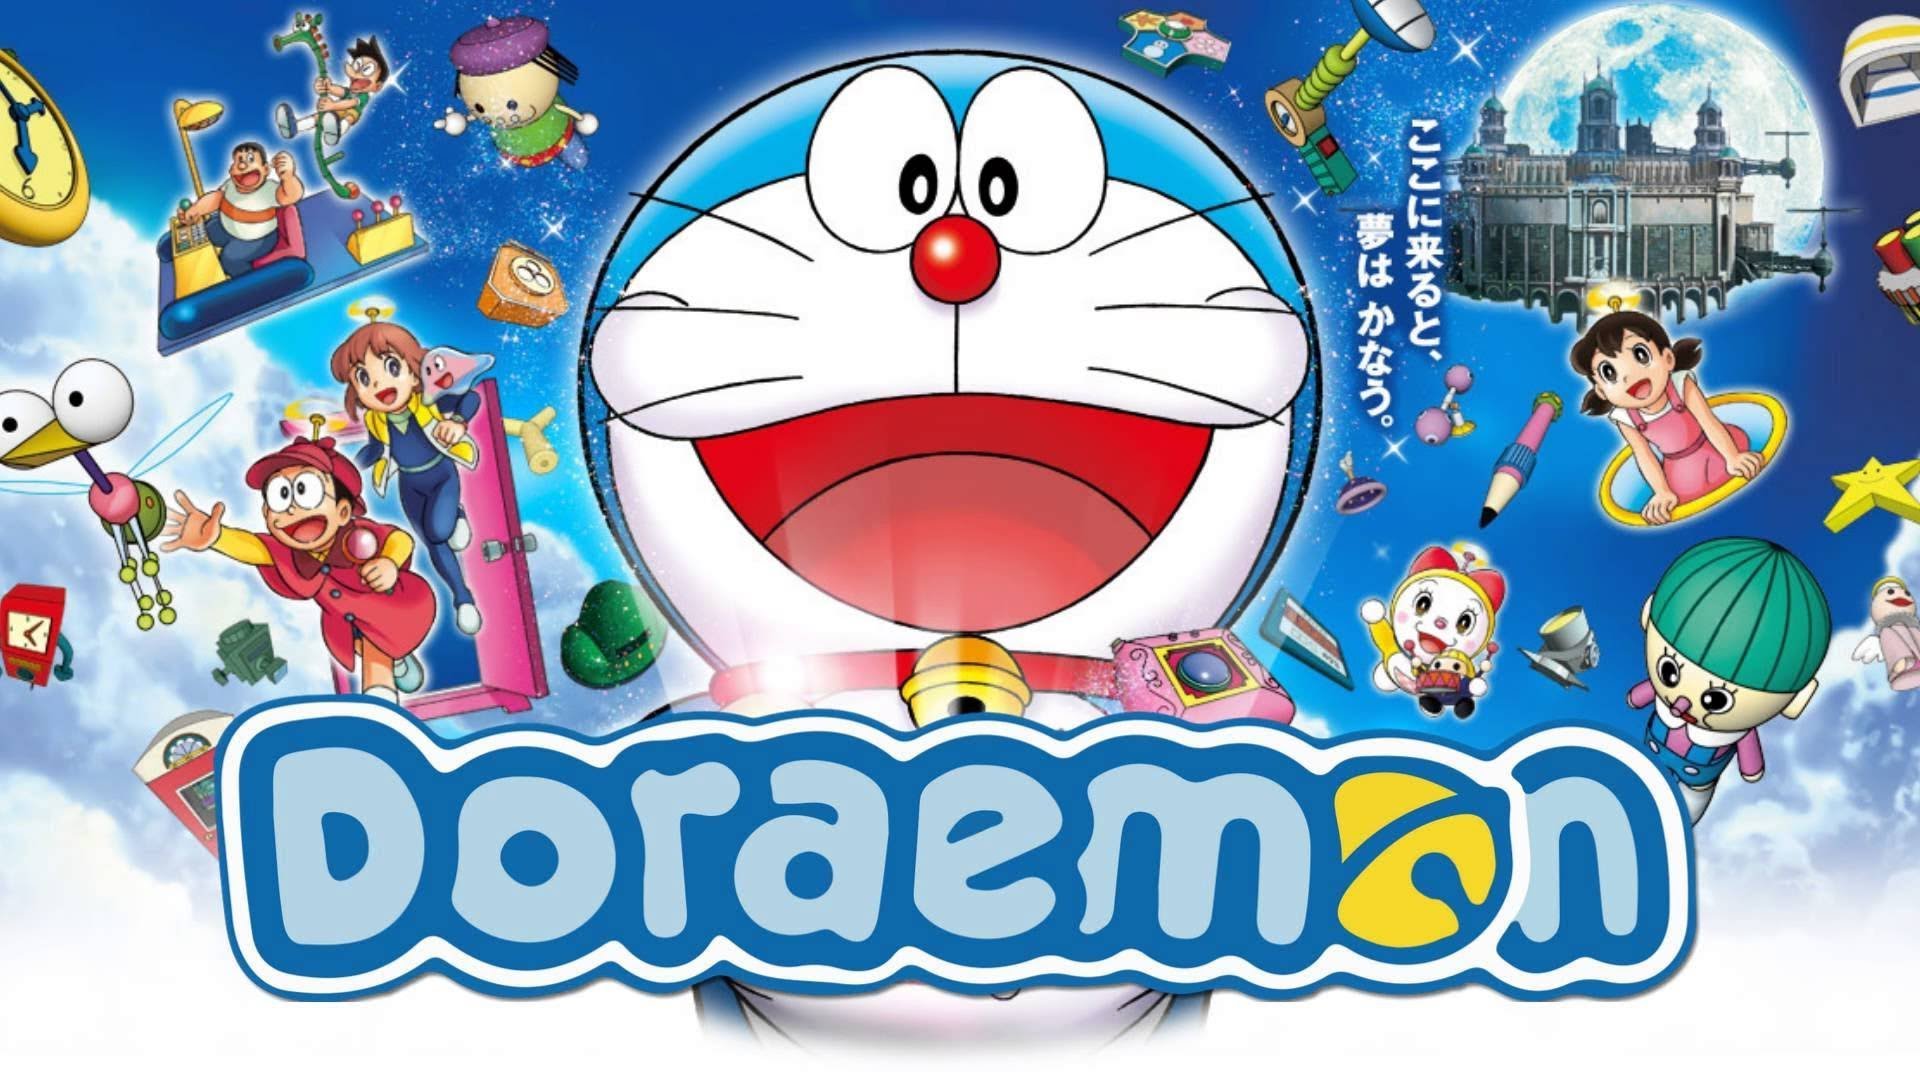 Hình nền Doraemon và bạn bè năm 2016: Năm 2016 đã qua, nhưng những kỷ niệm đáng yêu của Doraemon và các bạn bè vẫn còn đọng lại trong tâm trí chúng ta. Tận hưởng sự ấm áp và tình bạn bằng cách lựa chọn hình nền Doraemon và bạn bè năm 2016 cho màn hình điện thoại của bạn. Hãy tải ngay hôm nay để giữ mãi những kỷ niệm đáng nhớ này.